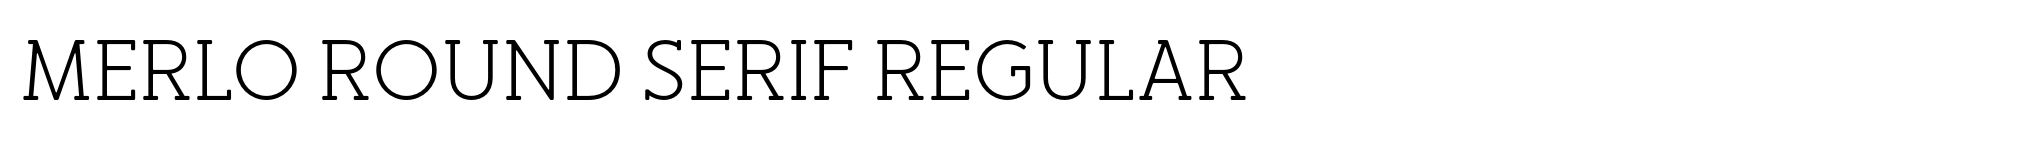 Merlo Round Serif Regular image